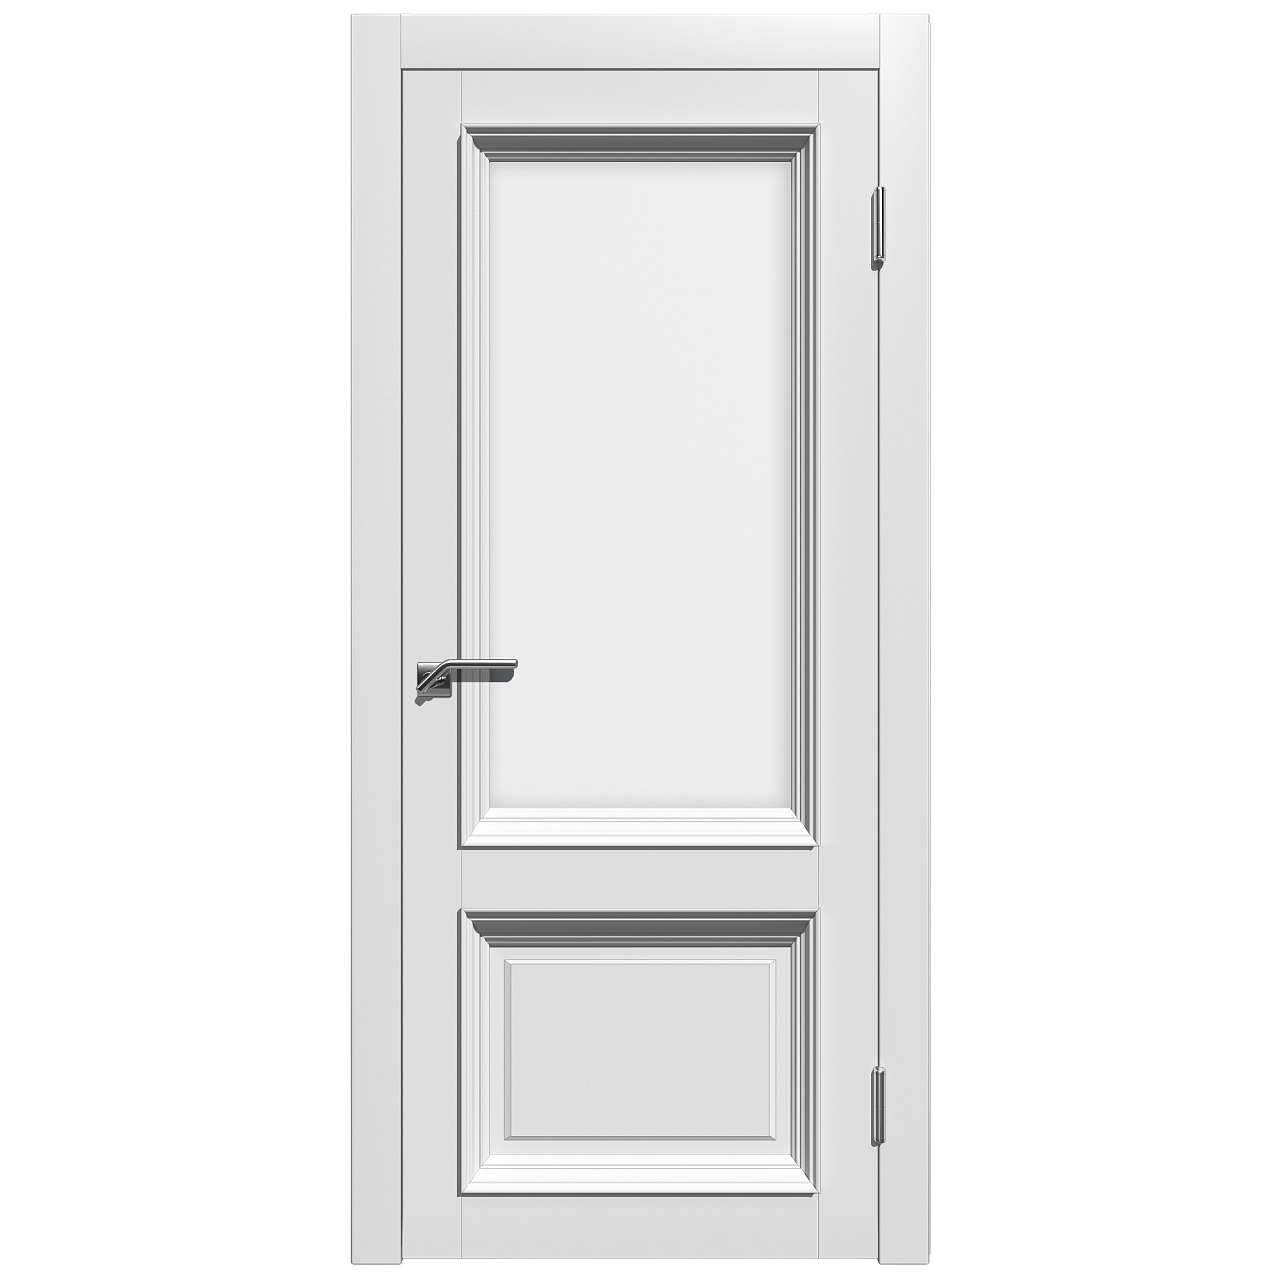 Межкомнатная дверь эмаль классика премиум «Стелла 2» (со стеклом)